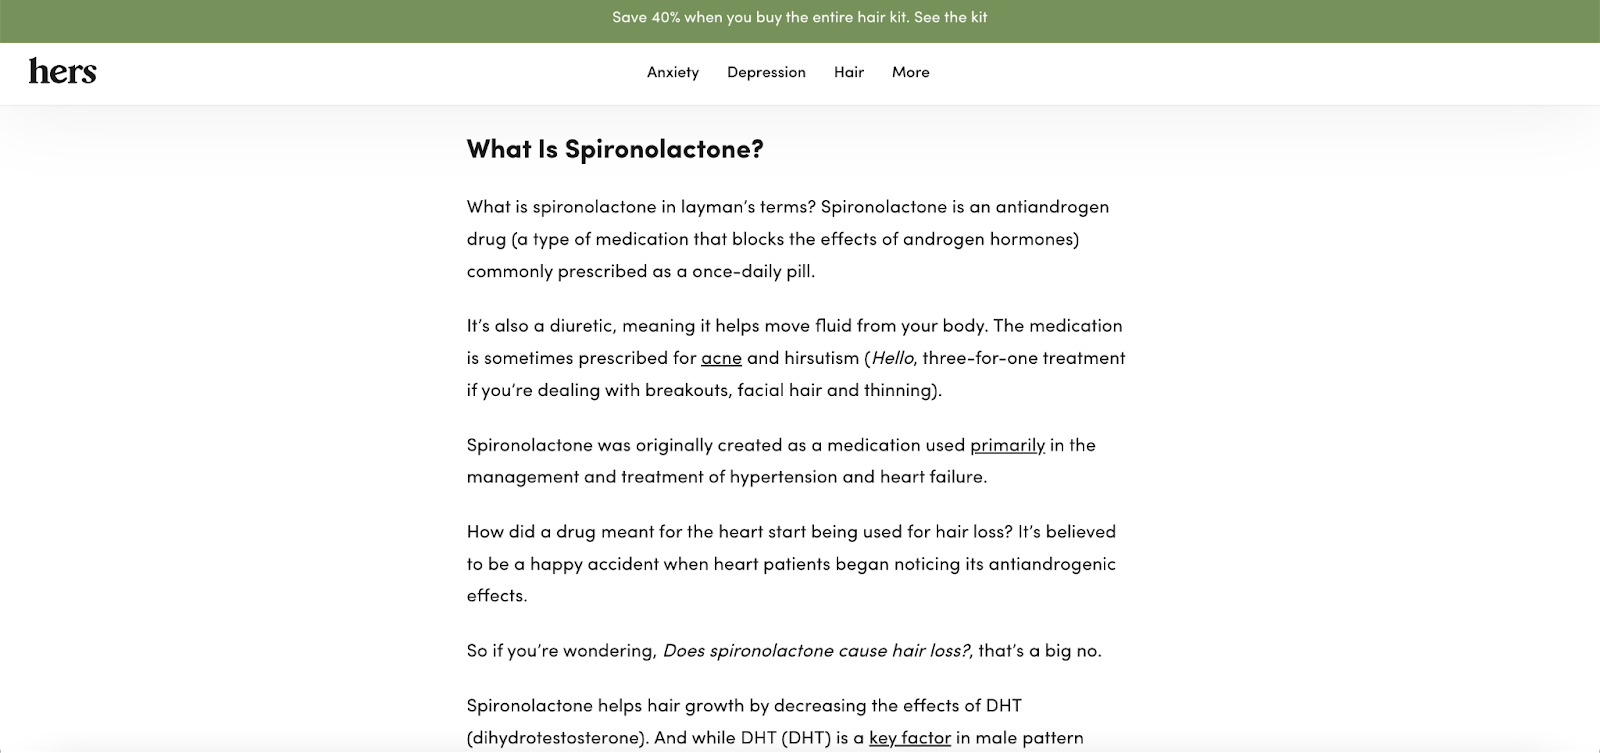 De afbeelding toont de beschrijving van Spironolactone, een van de producten van Hers. Het is een poging om gebruikers duidelijke details van het product te bieden.